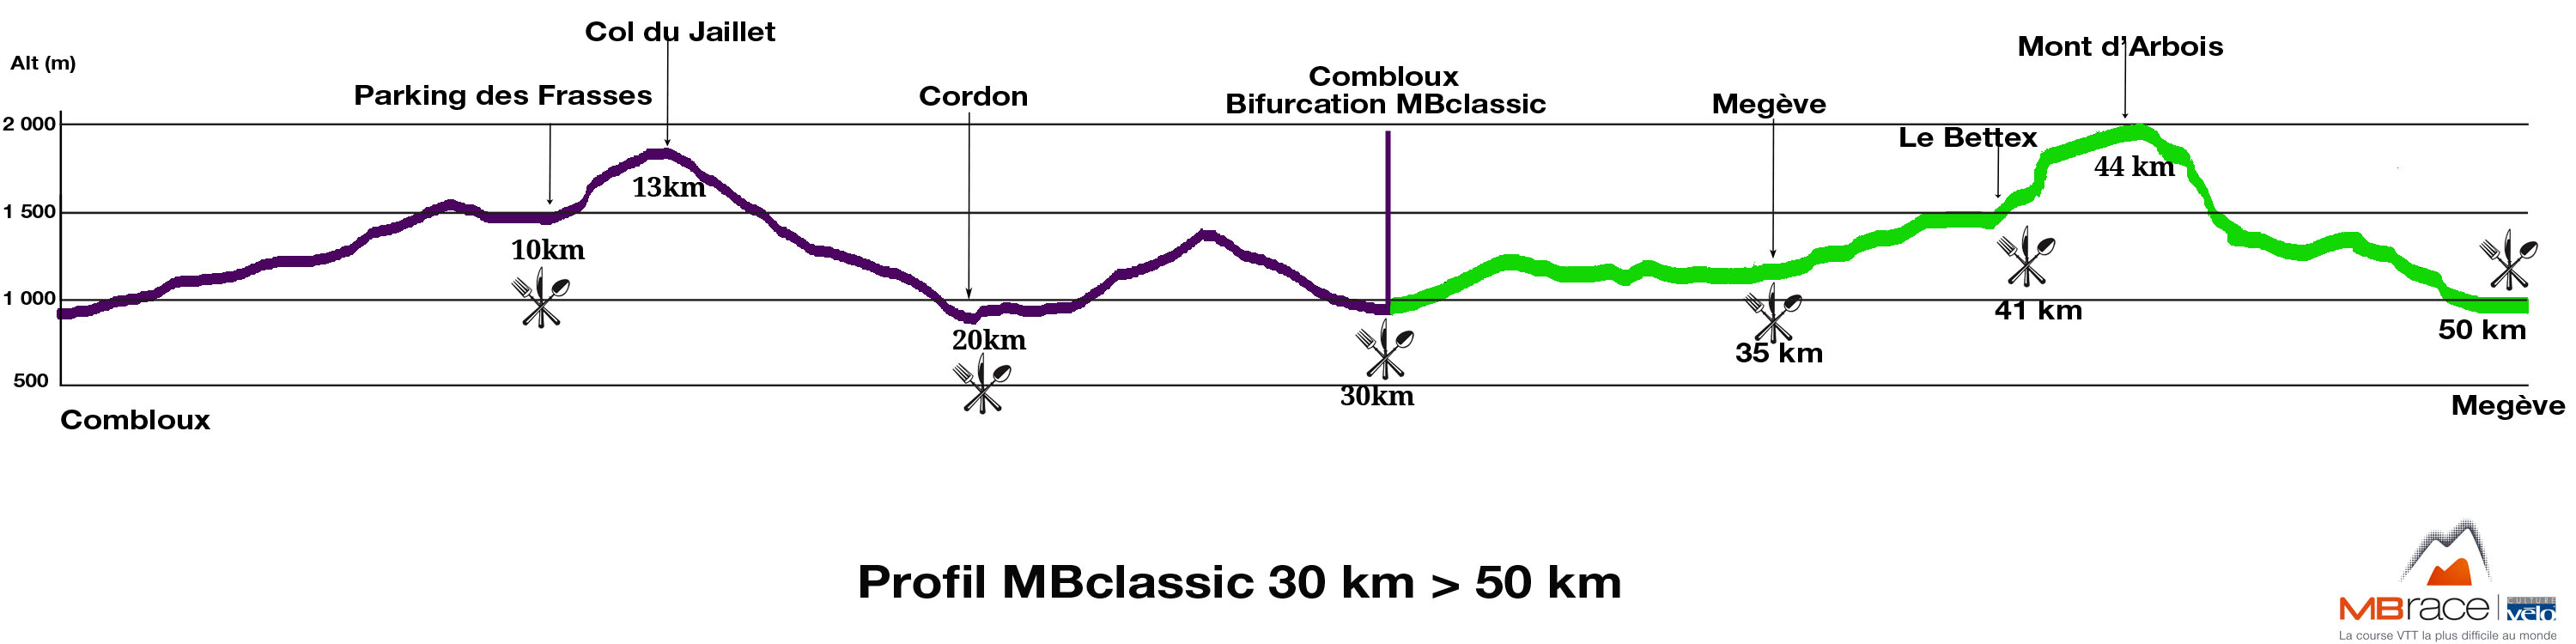 Profil_MBclassic - 2014b